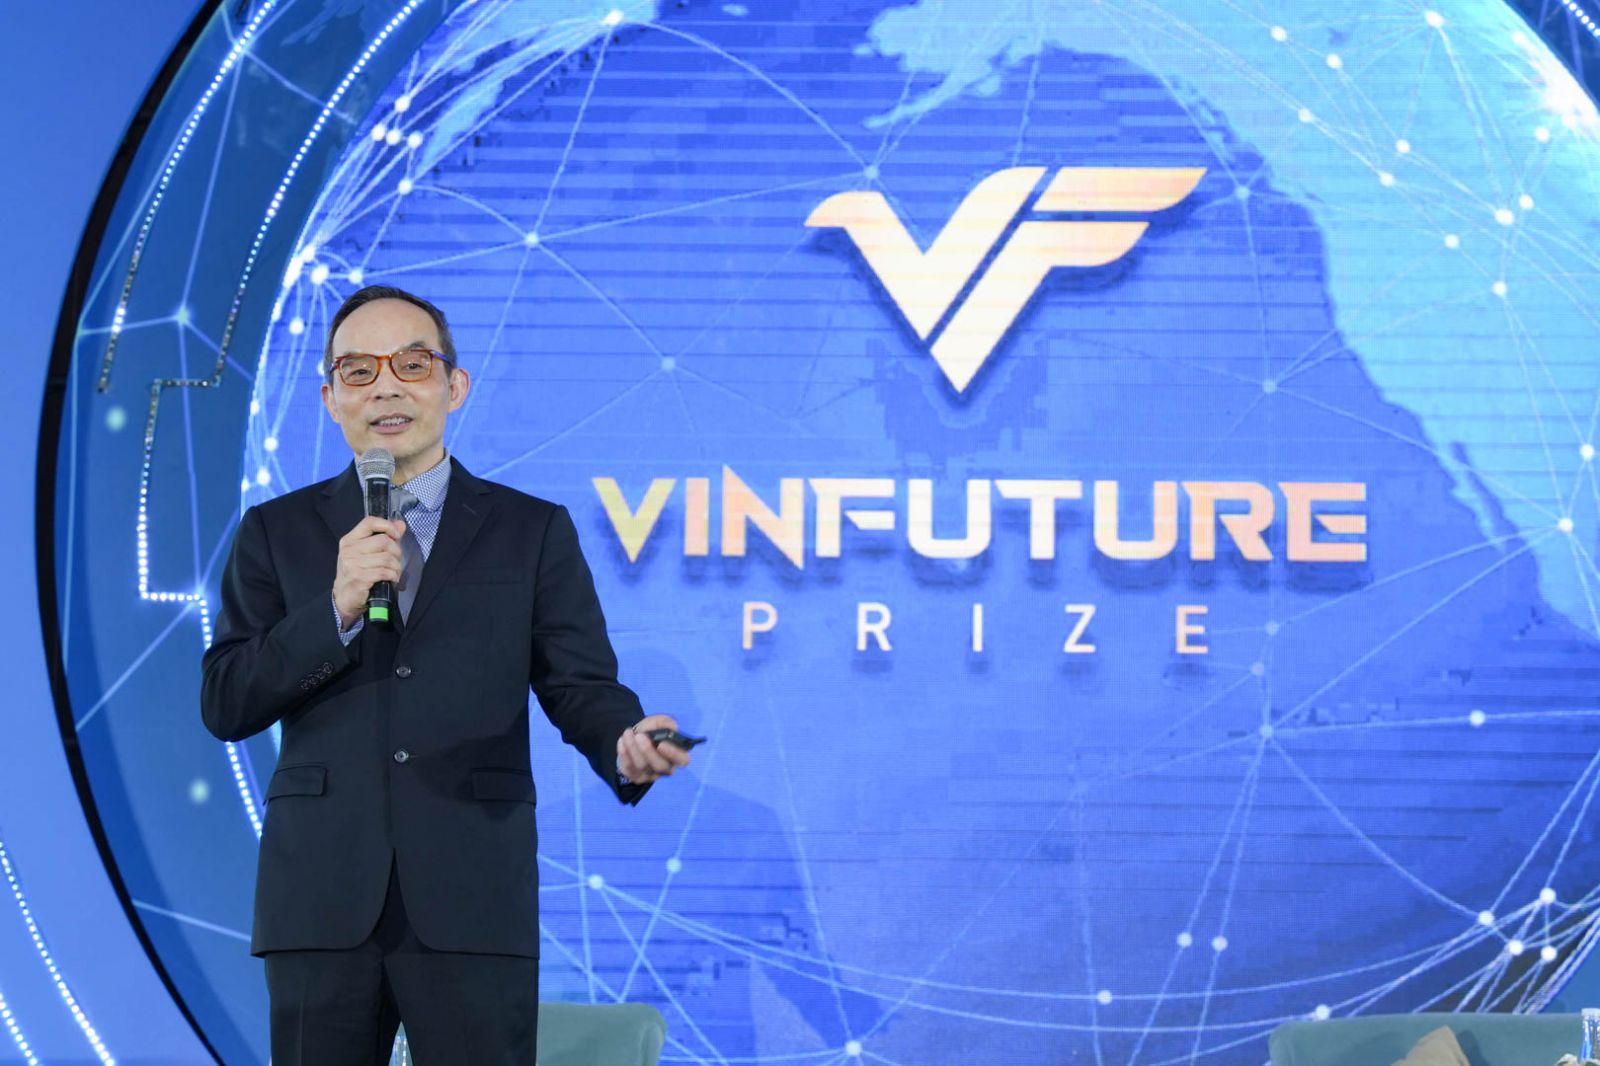 TS. Xuedong David Huang - Thành viên Hội đồng Giải thưởng VinFuture và Giám đốc Công nghệ của Tập đoàn Zoom (Hoa Kỳ) cùng bàn luận với các diễn giả trong toạ đàm Trí tuệ nhân tạo được tổ chức vào ngày 19/12 .